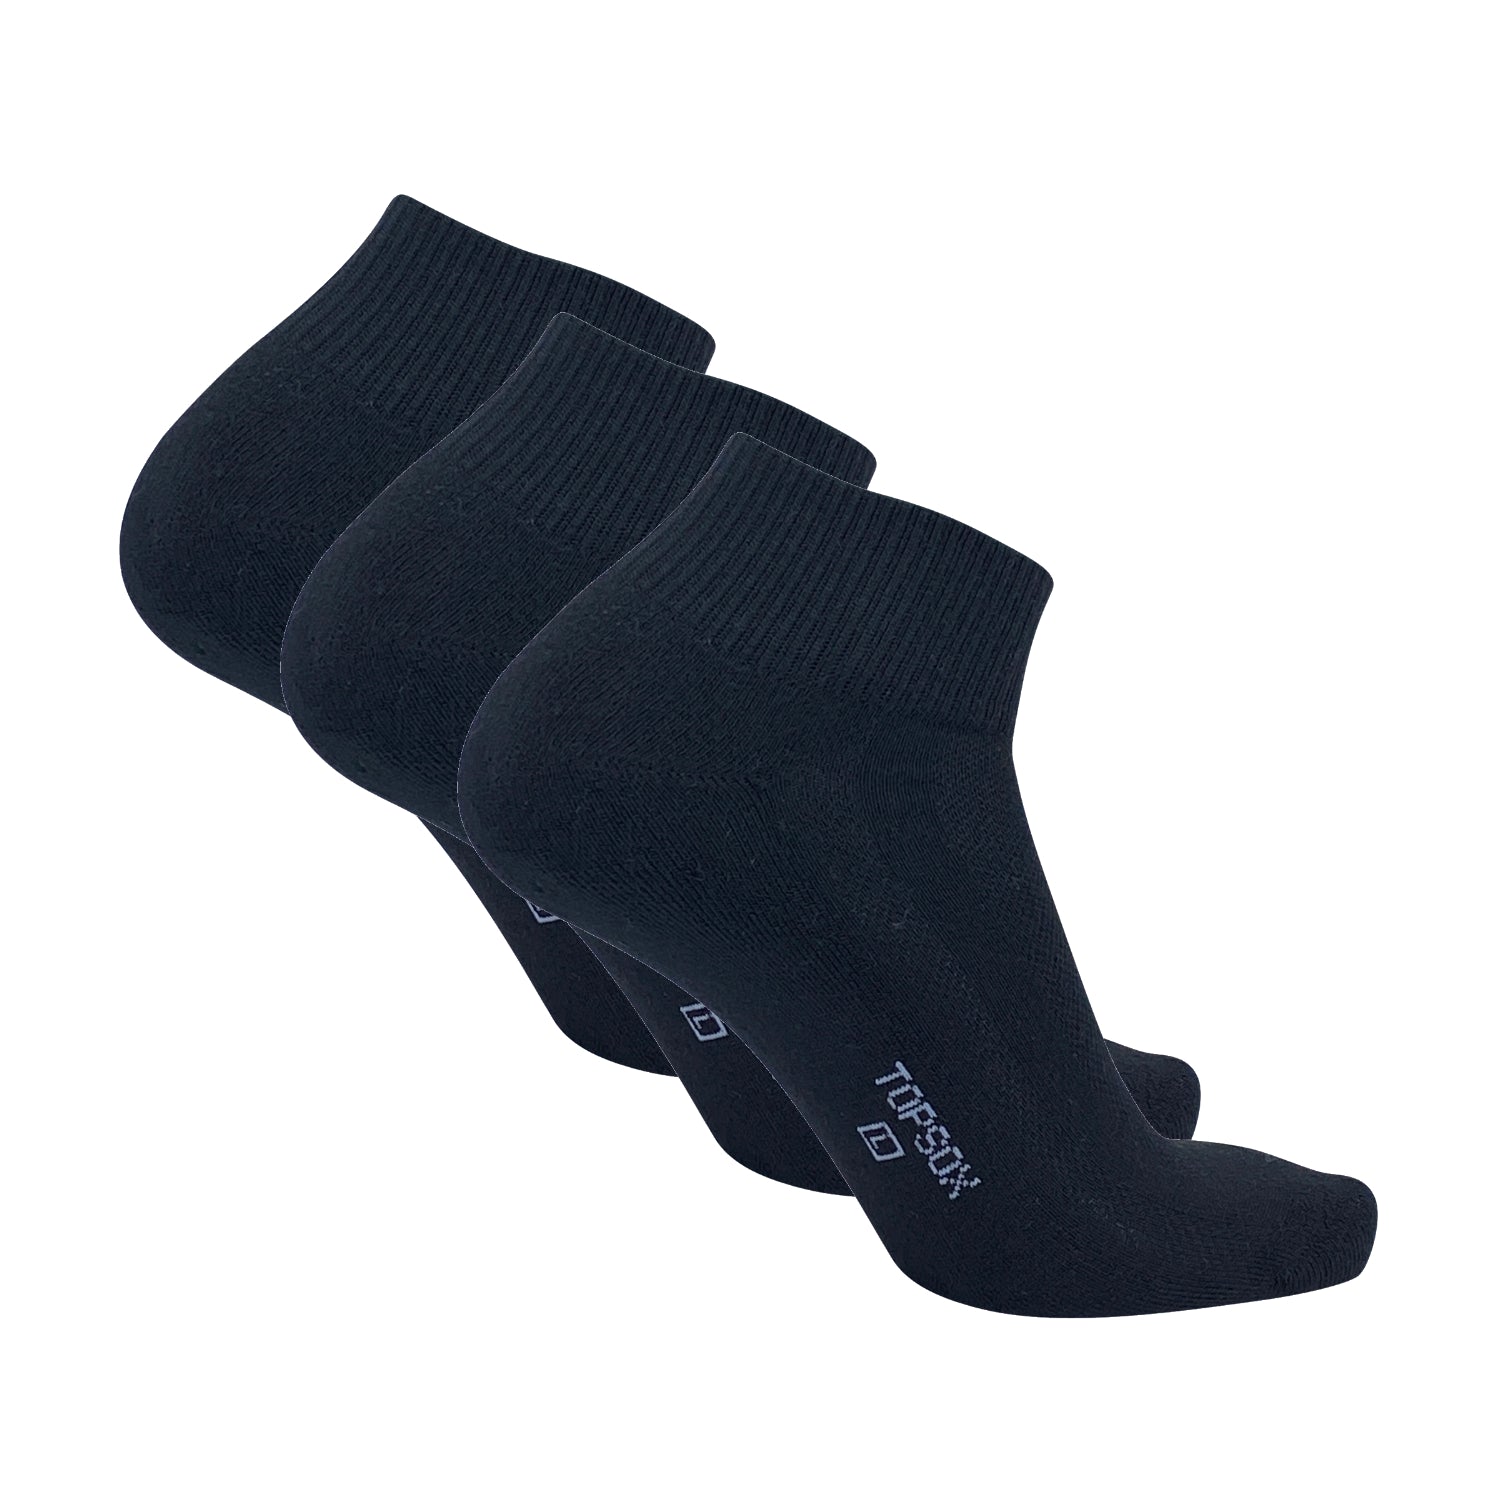 3-PACK Topsox Elite Karma Comfort Performance Black Ankle Socks